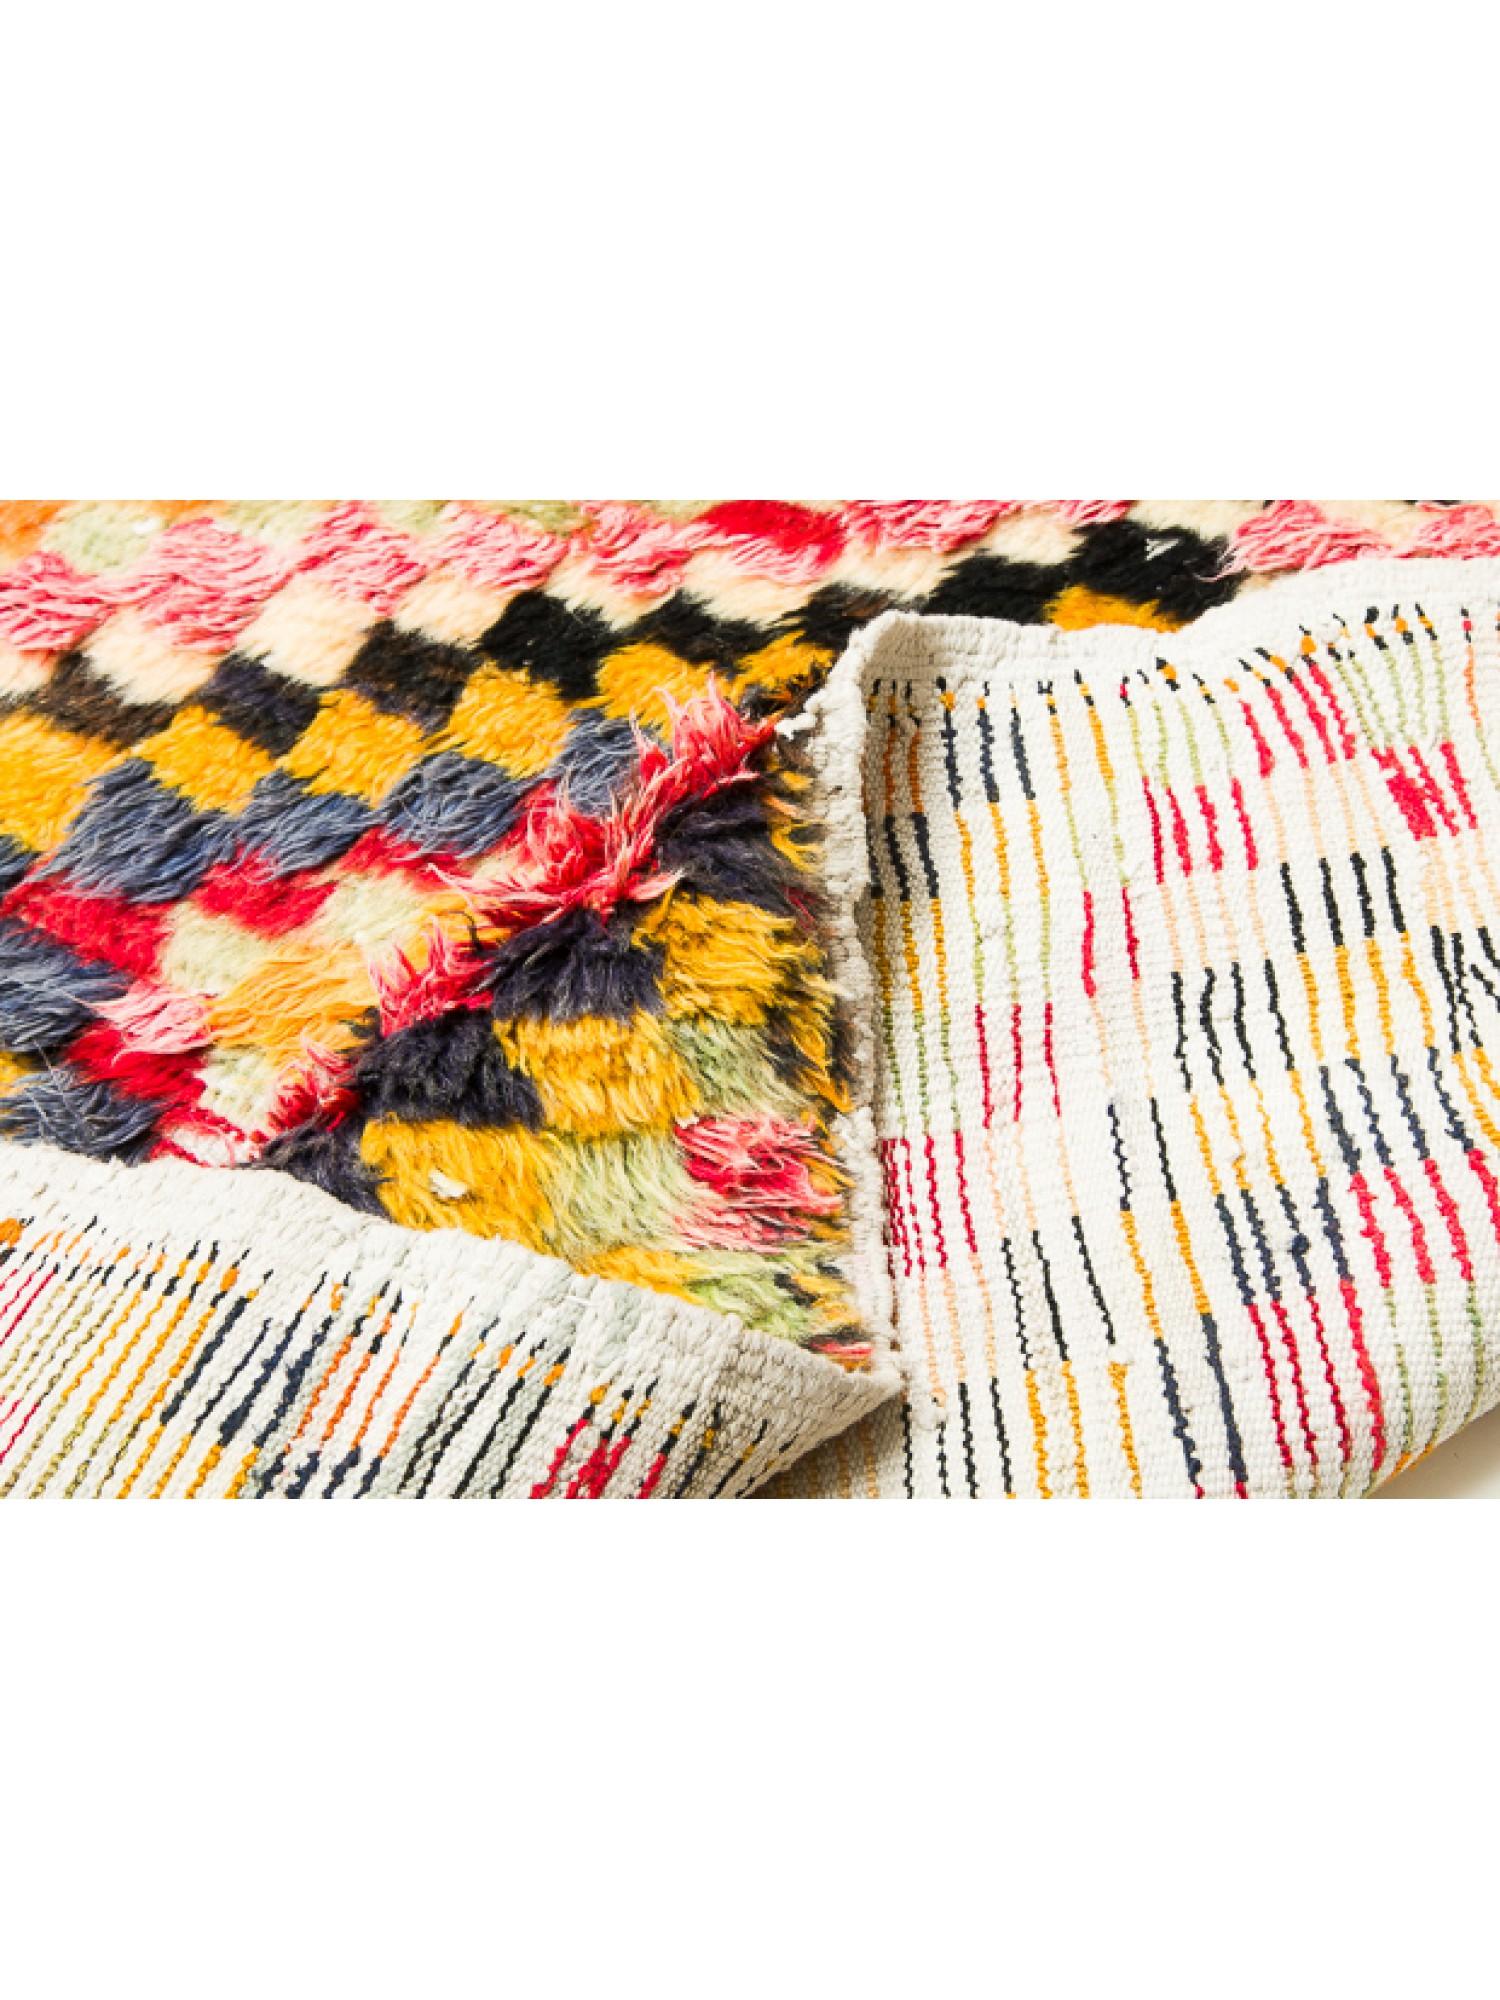 Dies ist ein Vintage Tulu Läufer Teppich aus Zentralanatolien, der Region Konya mit zotteliger Wolle lange Haare, guter Zustand, und schöne Farbe Zusammensetzung.

Zentralanatolische Tulu-Teppiche, auch bekannt als Tulu-Teppiche oder Tulu-Kilims,